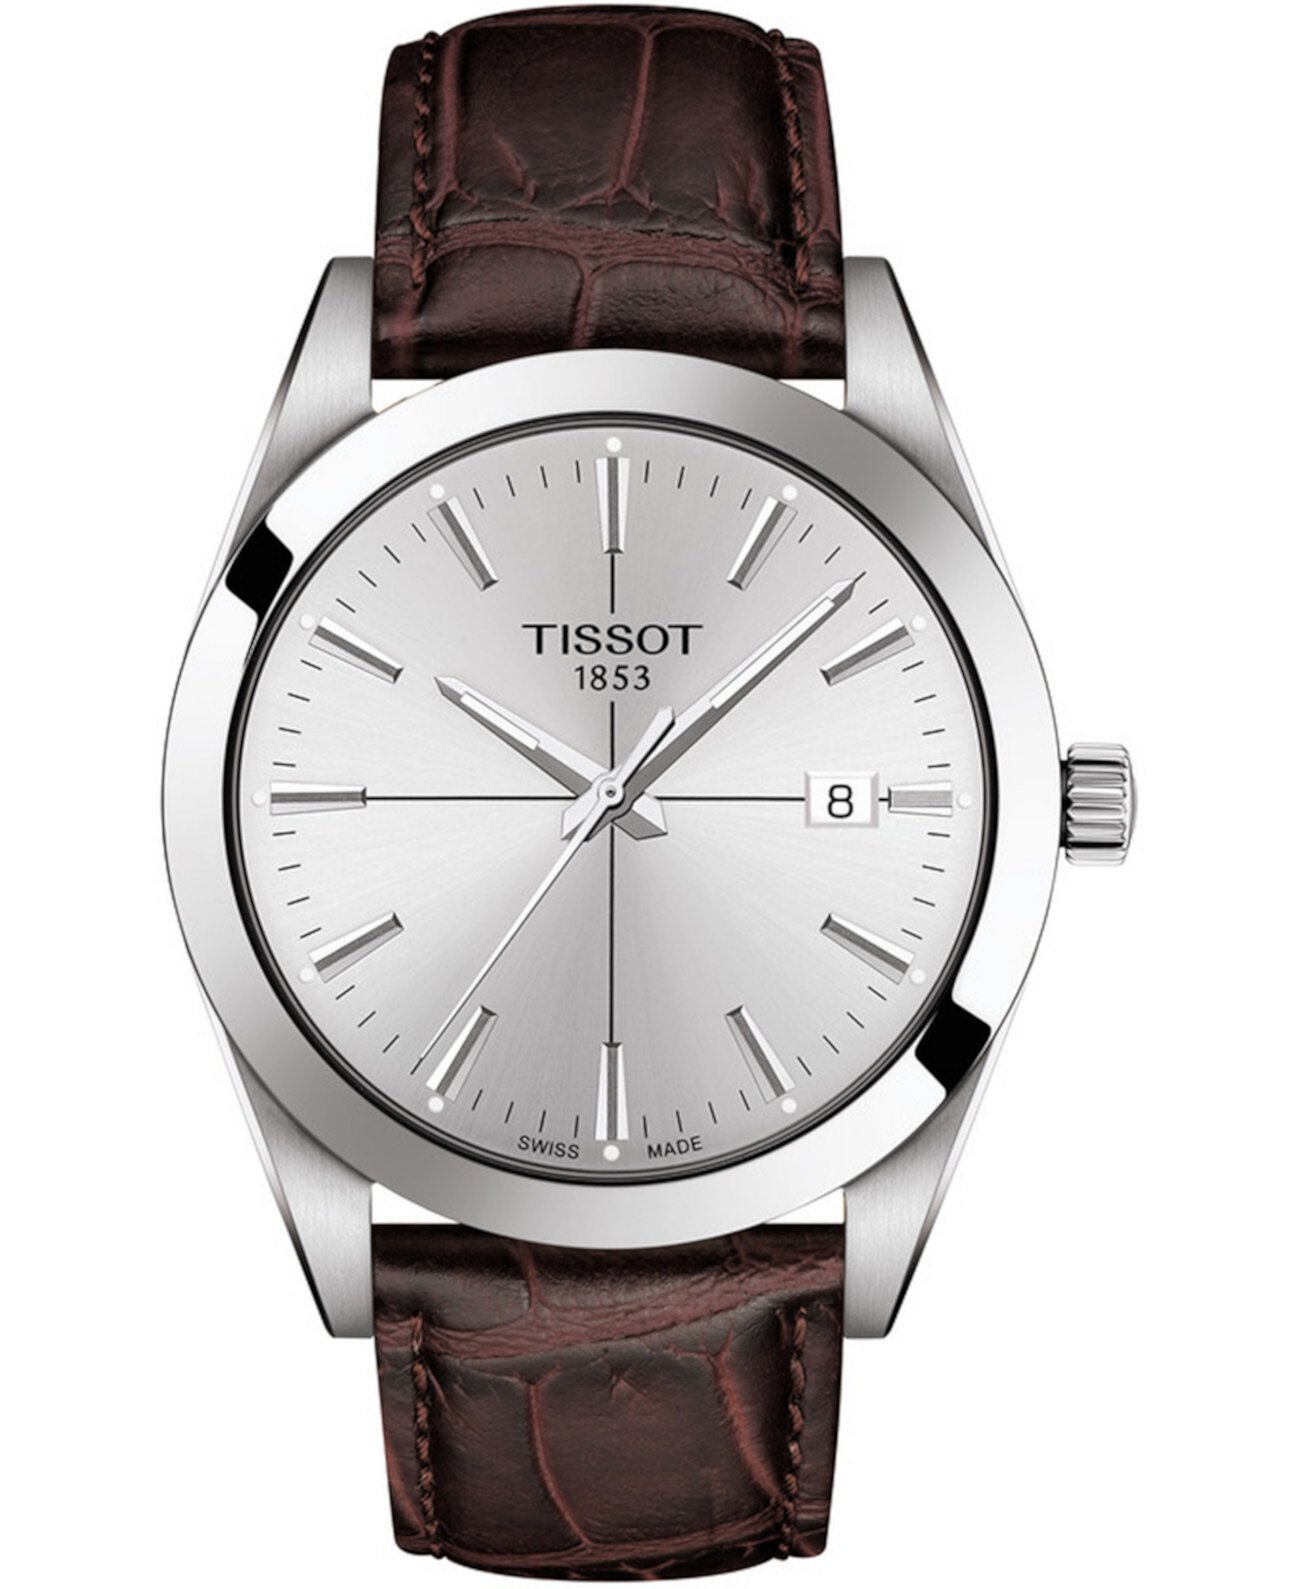 Мужские швейцарские часы с коричневым кожаным ремешком Gentleman 40 мм Tissot